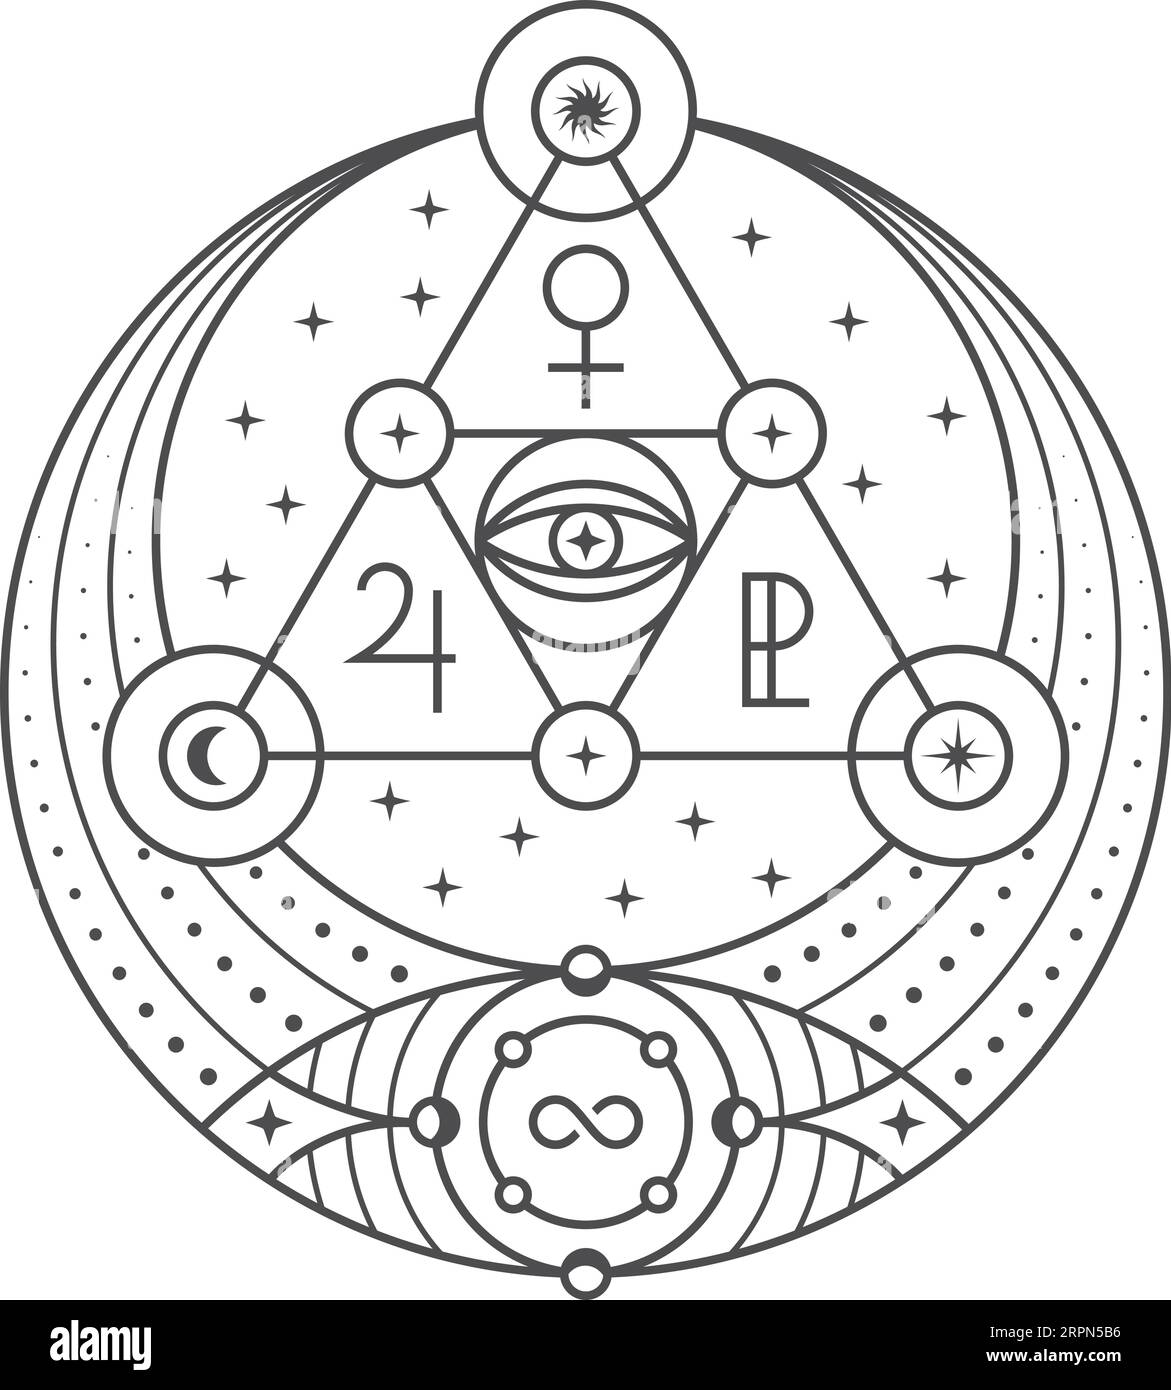 Symbole mystique. Ancien signe rituel avec des icônes d'alchimie Illustration de Vecteur